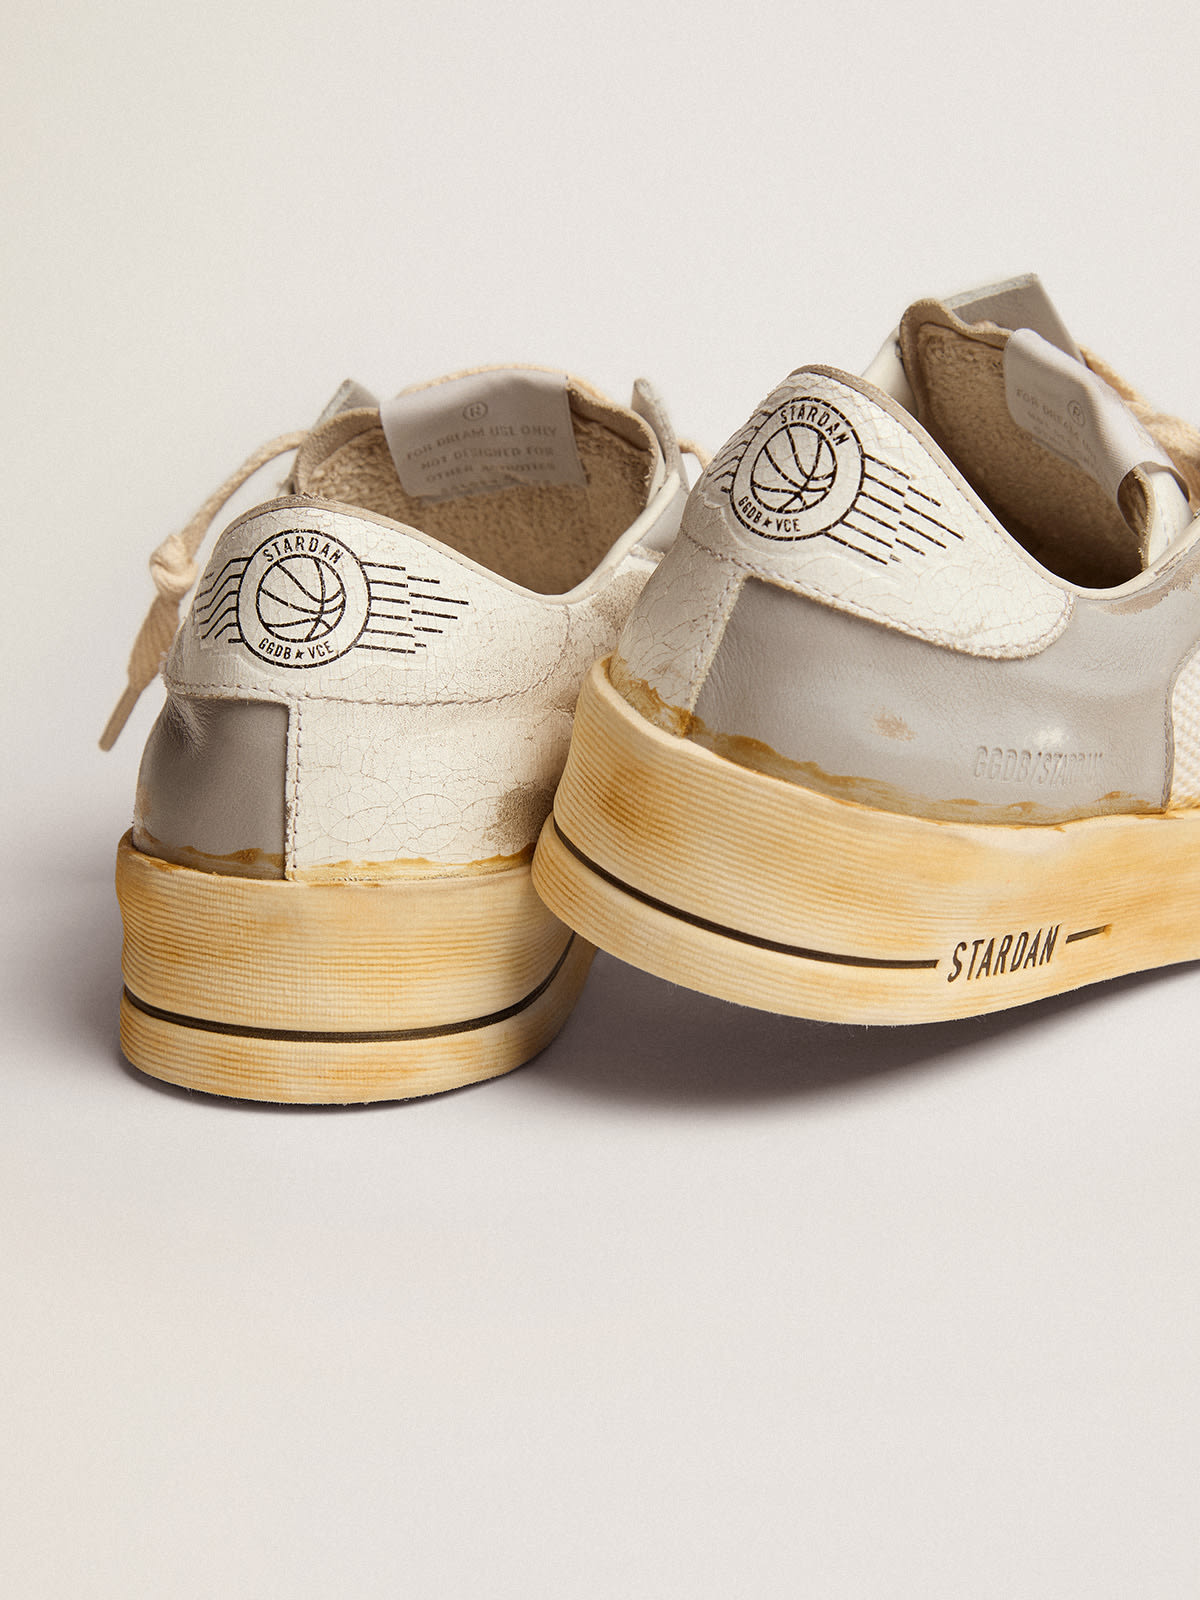 Golden Goose - Sneakers Stardan avec étoile en cuir blanc avec imprimé GGDB et contrefort en cuir craquelé blanc in 